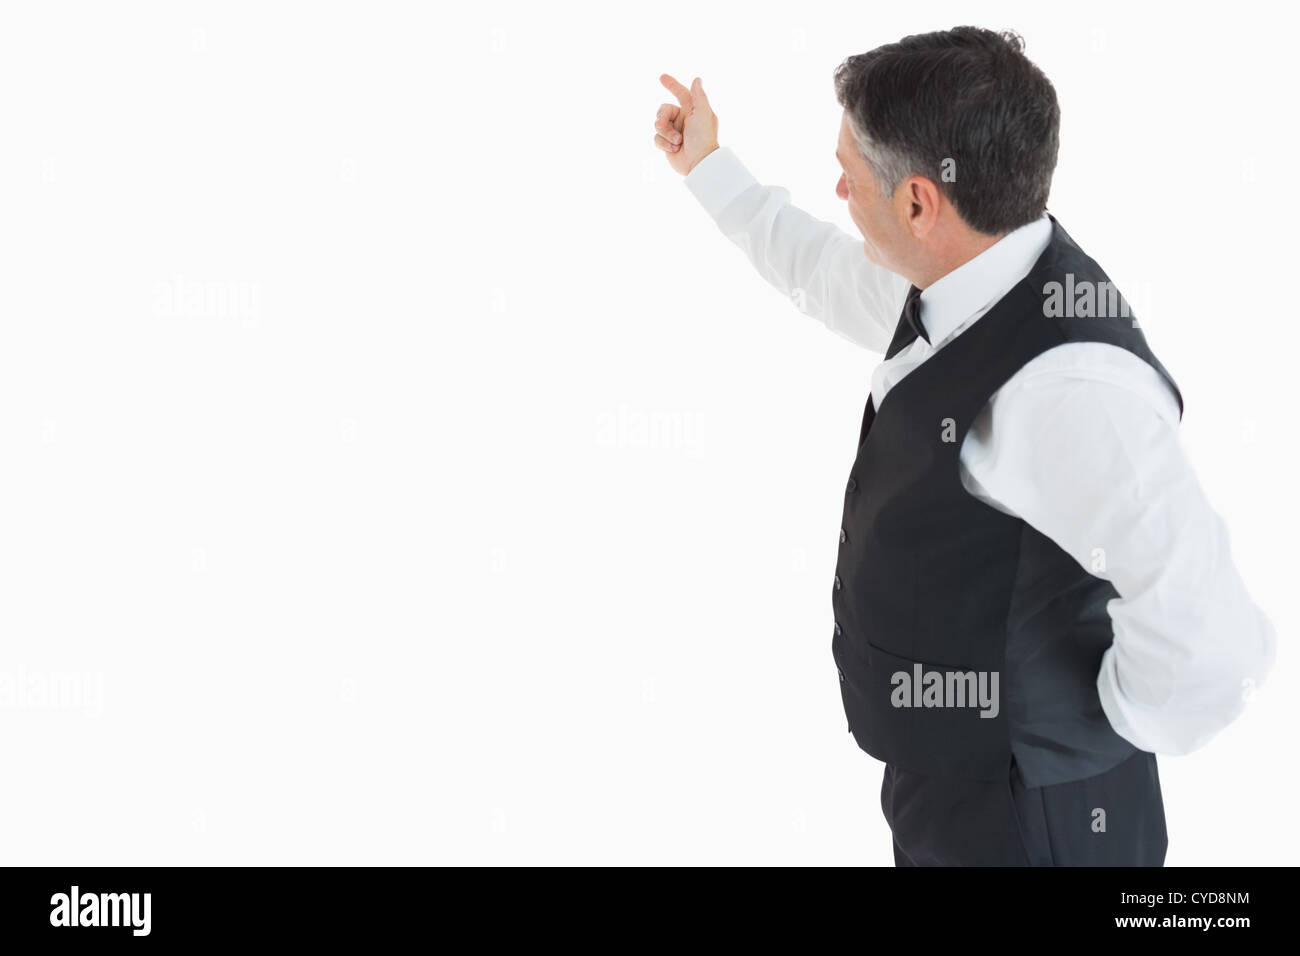 Waiter pointing something Stock Photo